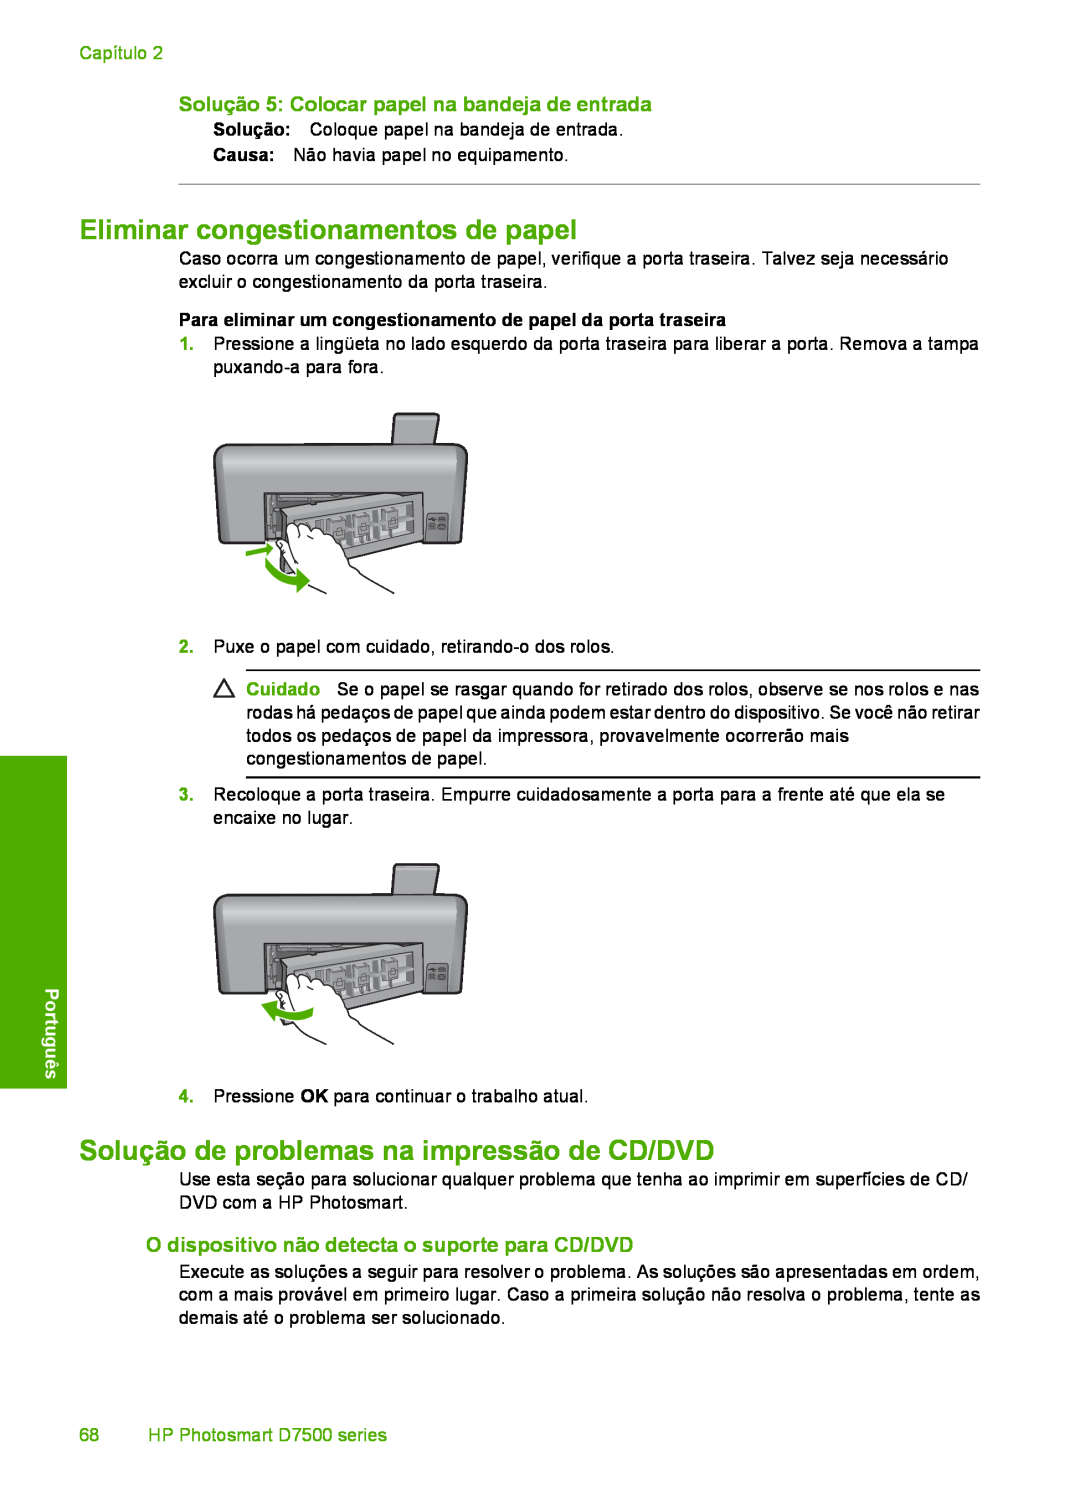 HP D7560 manual Eliminar congestionamentos de papel, Solução de problemas na impressão de CD/DVD, Capítulo 